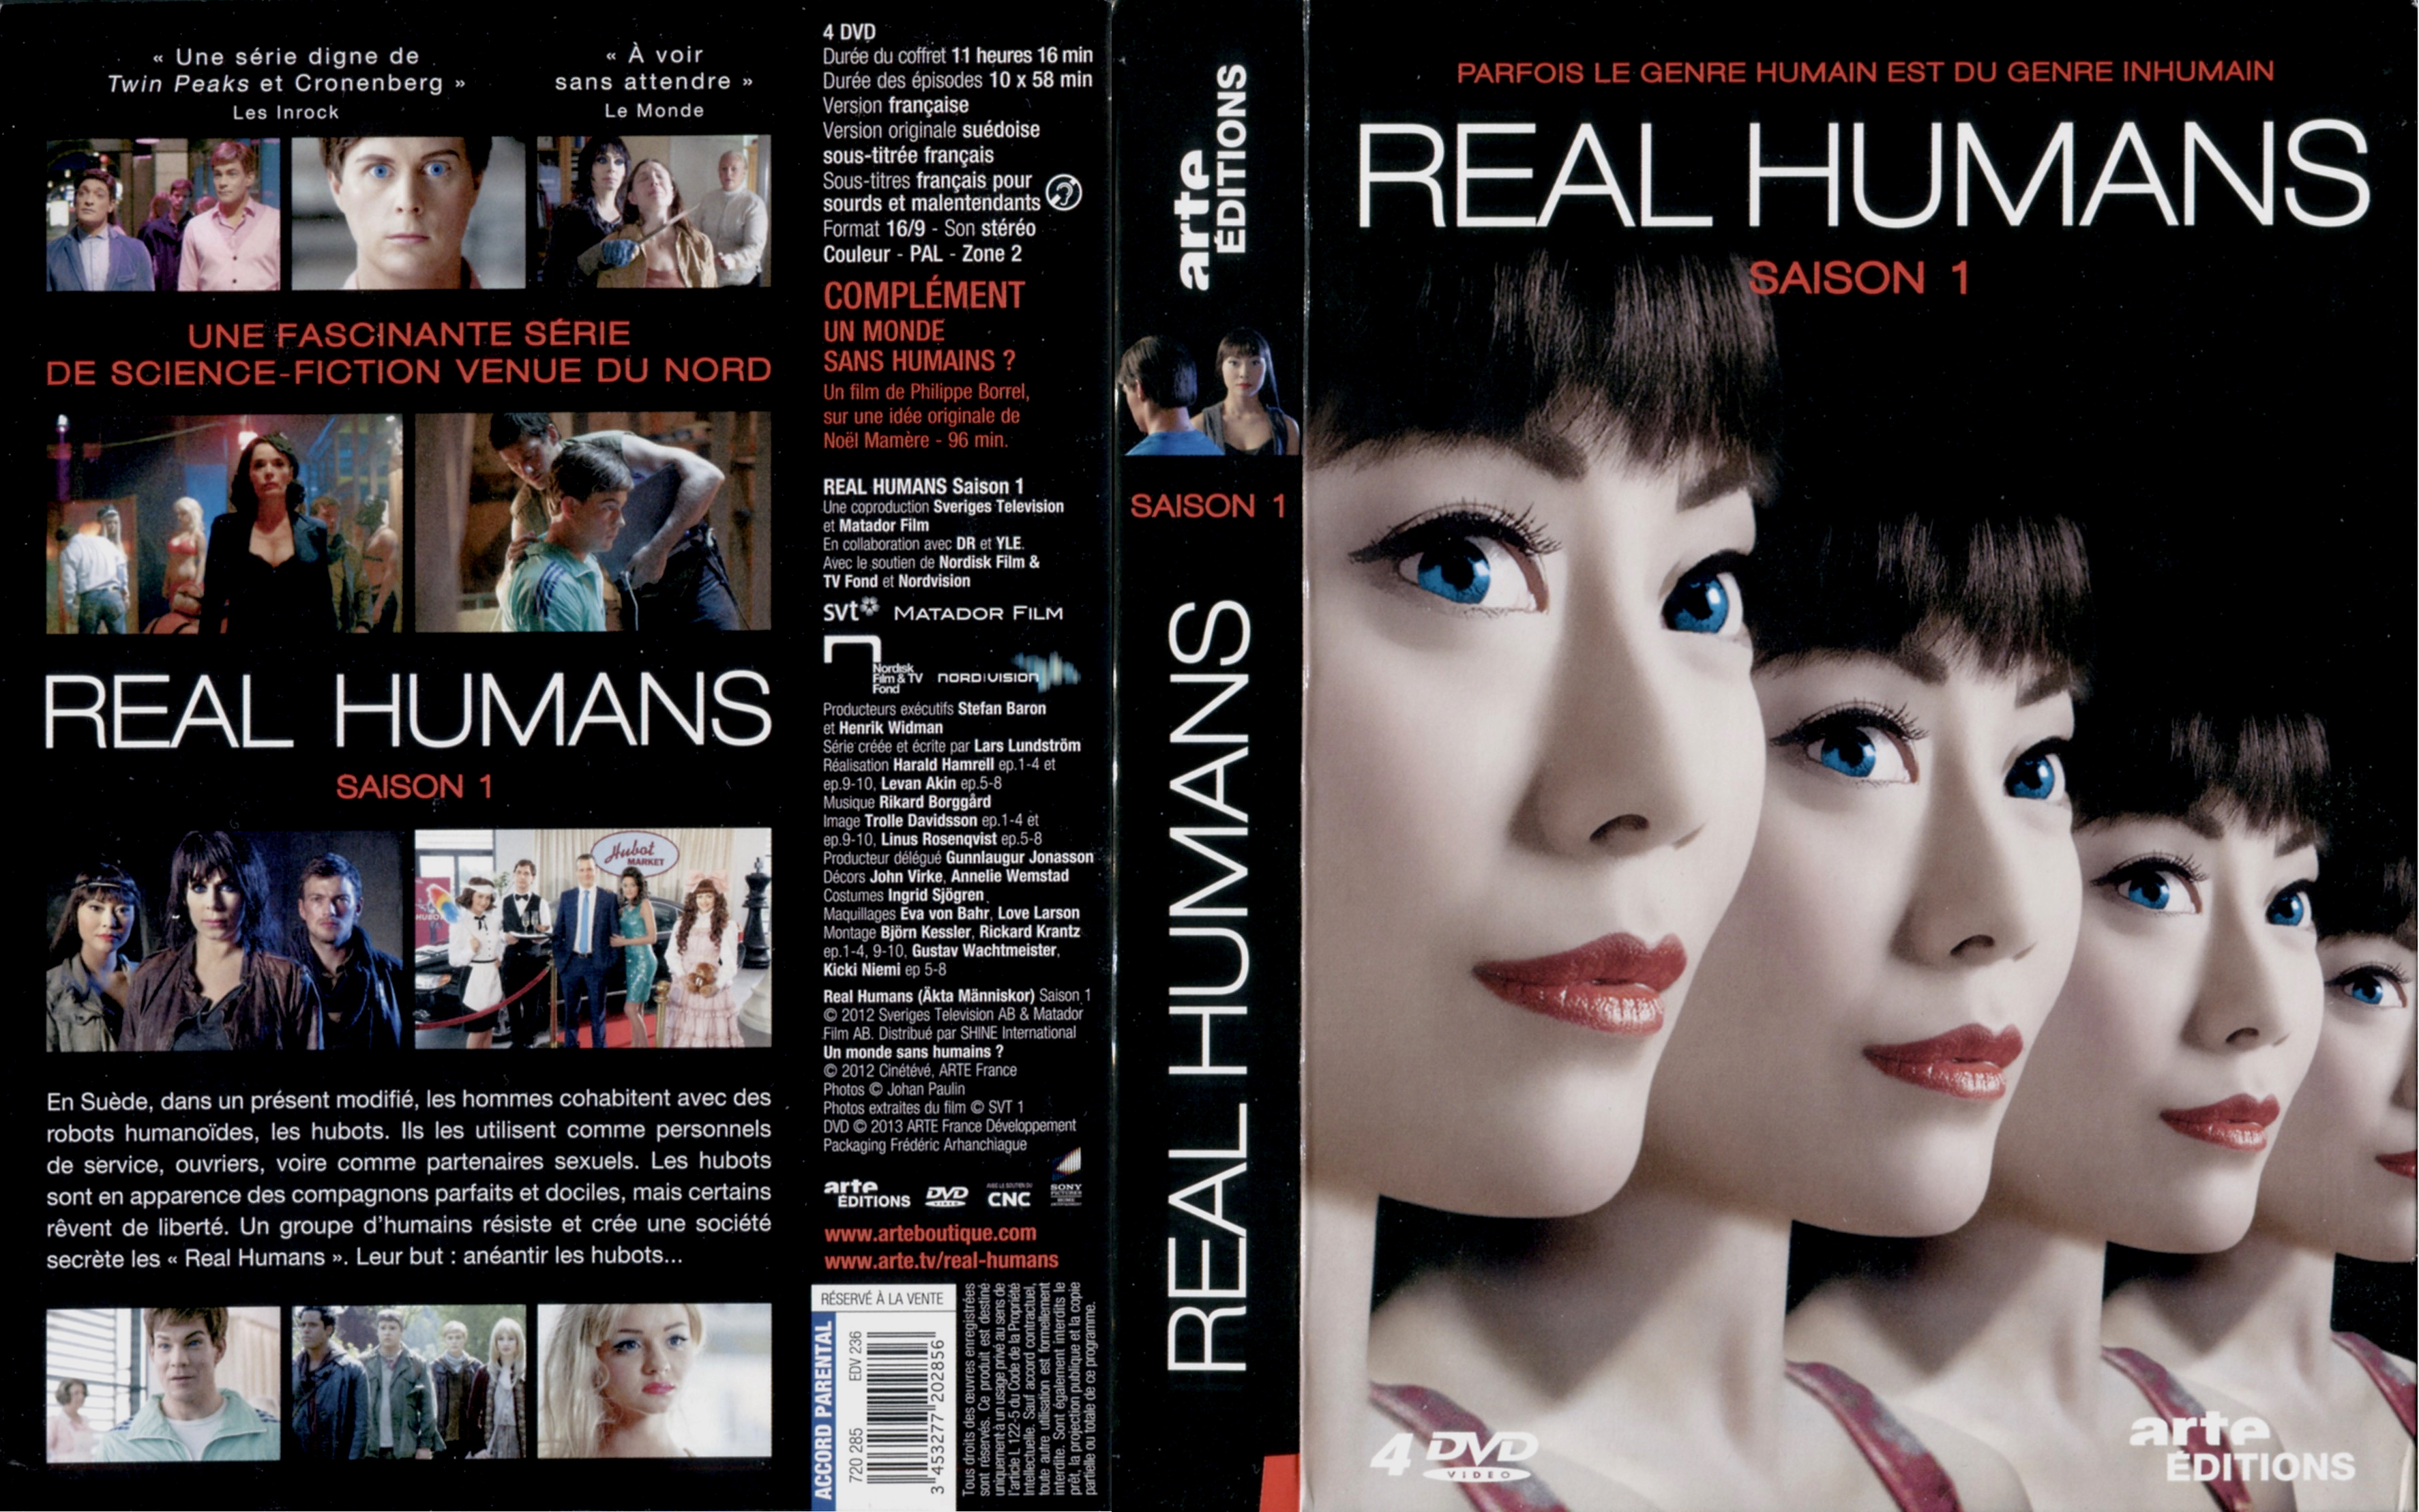 Jaquette DVD Real Humans Saison 1 COFFRET